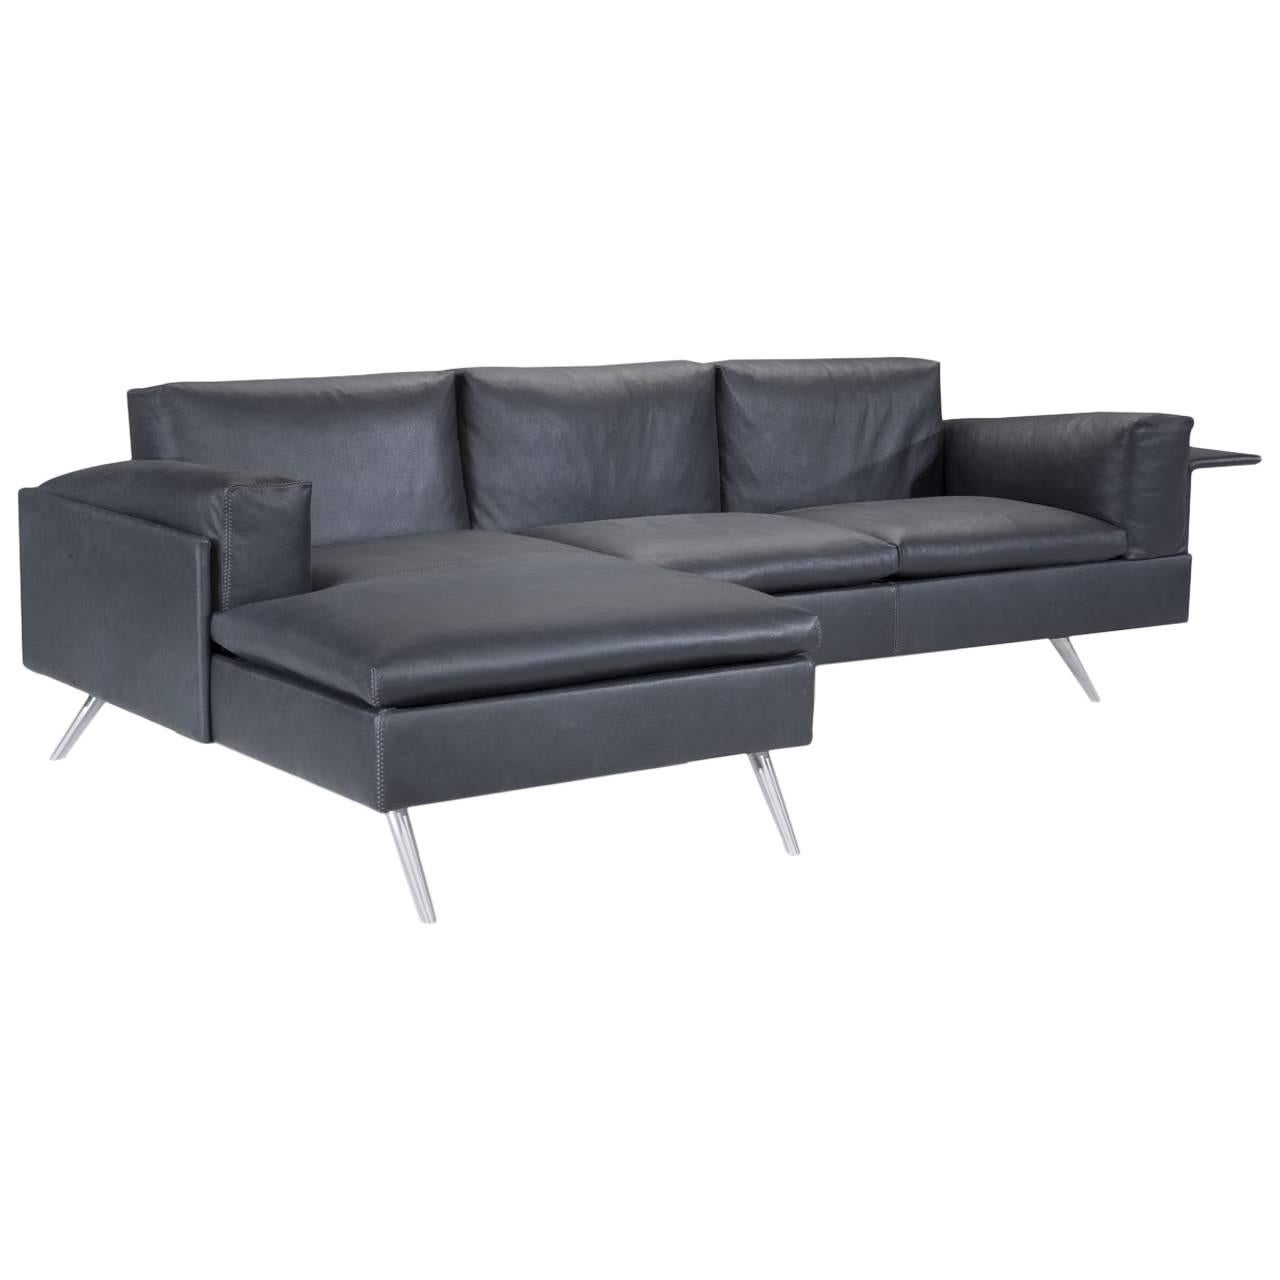 AL Composition Sofa in Black by Luca Scacchetti For Sale